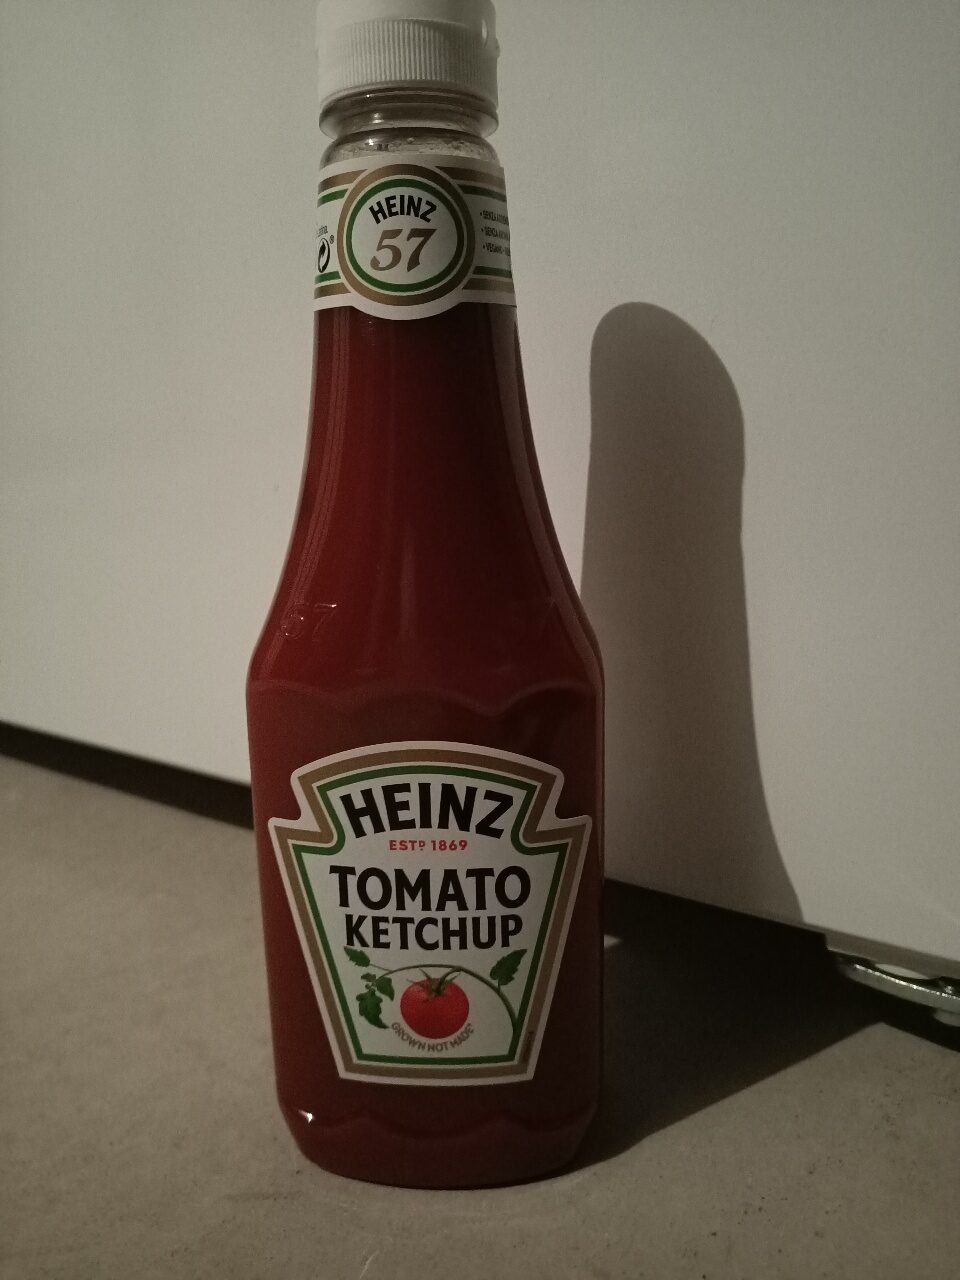 Tomato Ketchup - Produkt - en